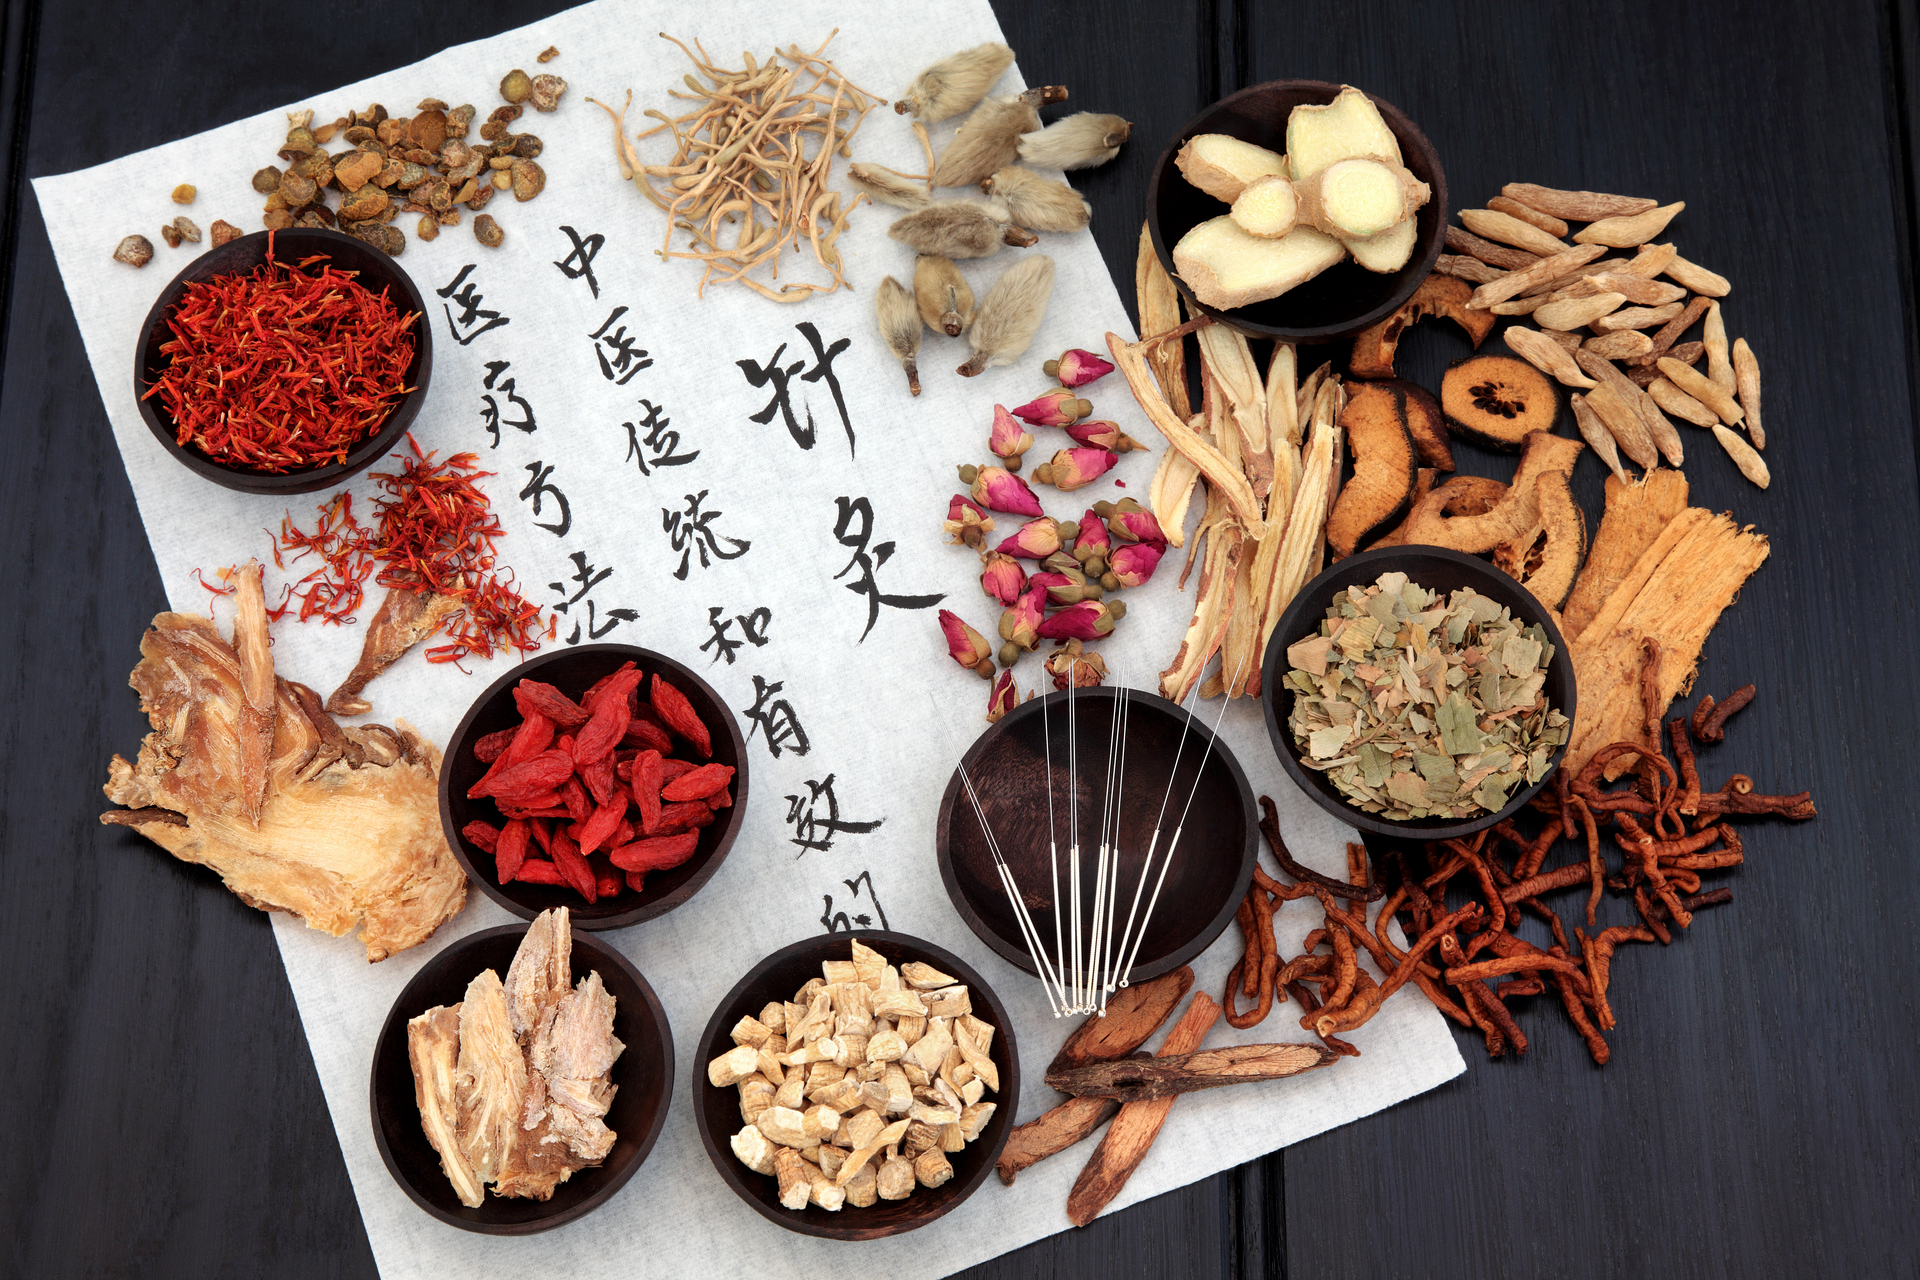 Na tym obrazku widzimy różnorodne zioła stosowane w medycynie chińskiej. Na stole ułożone są suszone rośliny, takie jak goździki, żeń-szeń i mięta, które są znane ze swoich właściwości leczniczych. Ich naturalne kolory i intensywny aromat wzbudzają zainteresowanie. Możemy dostrzec różnorodność kształtów i tekstur ziół, co świadczy o ich różnorodnych właściwościach i zastosowaniach.